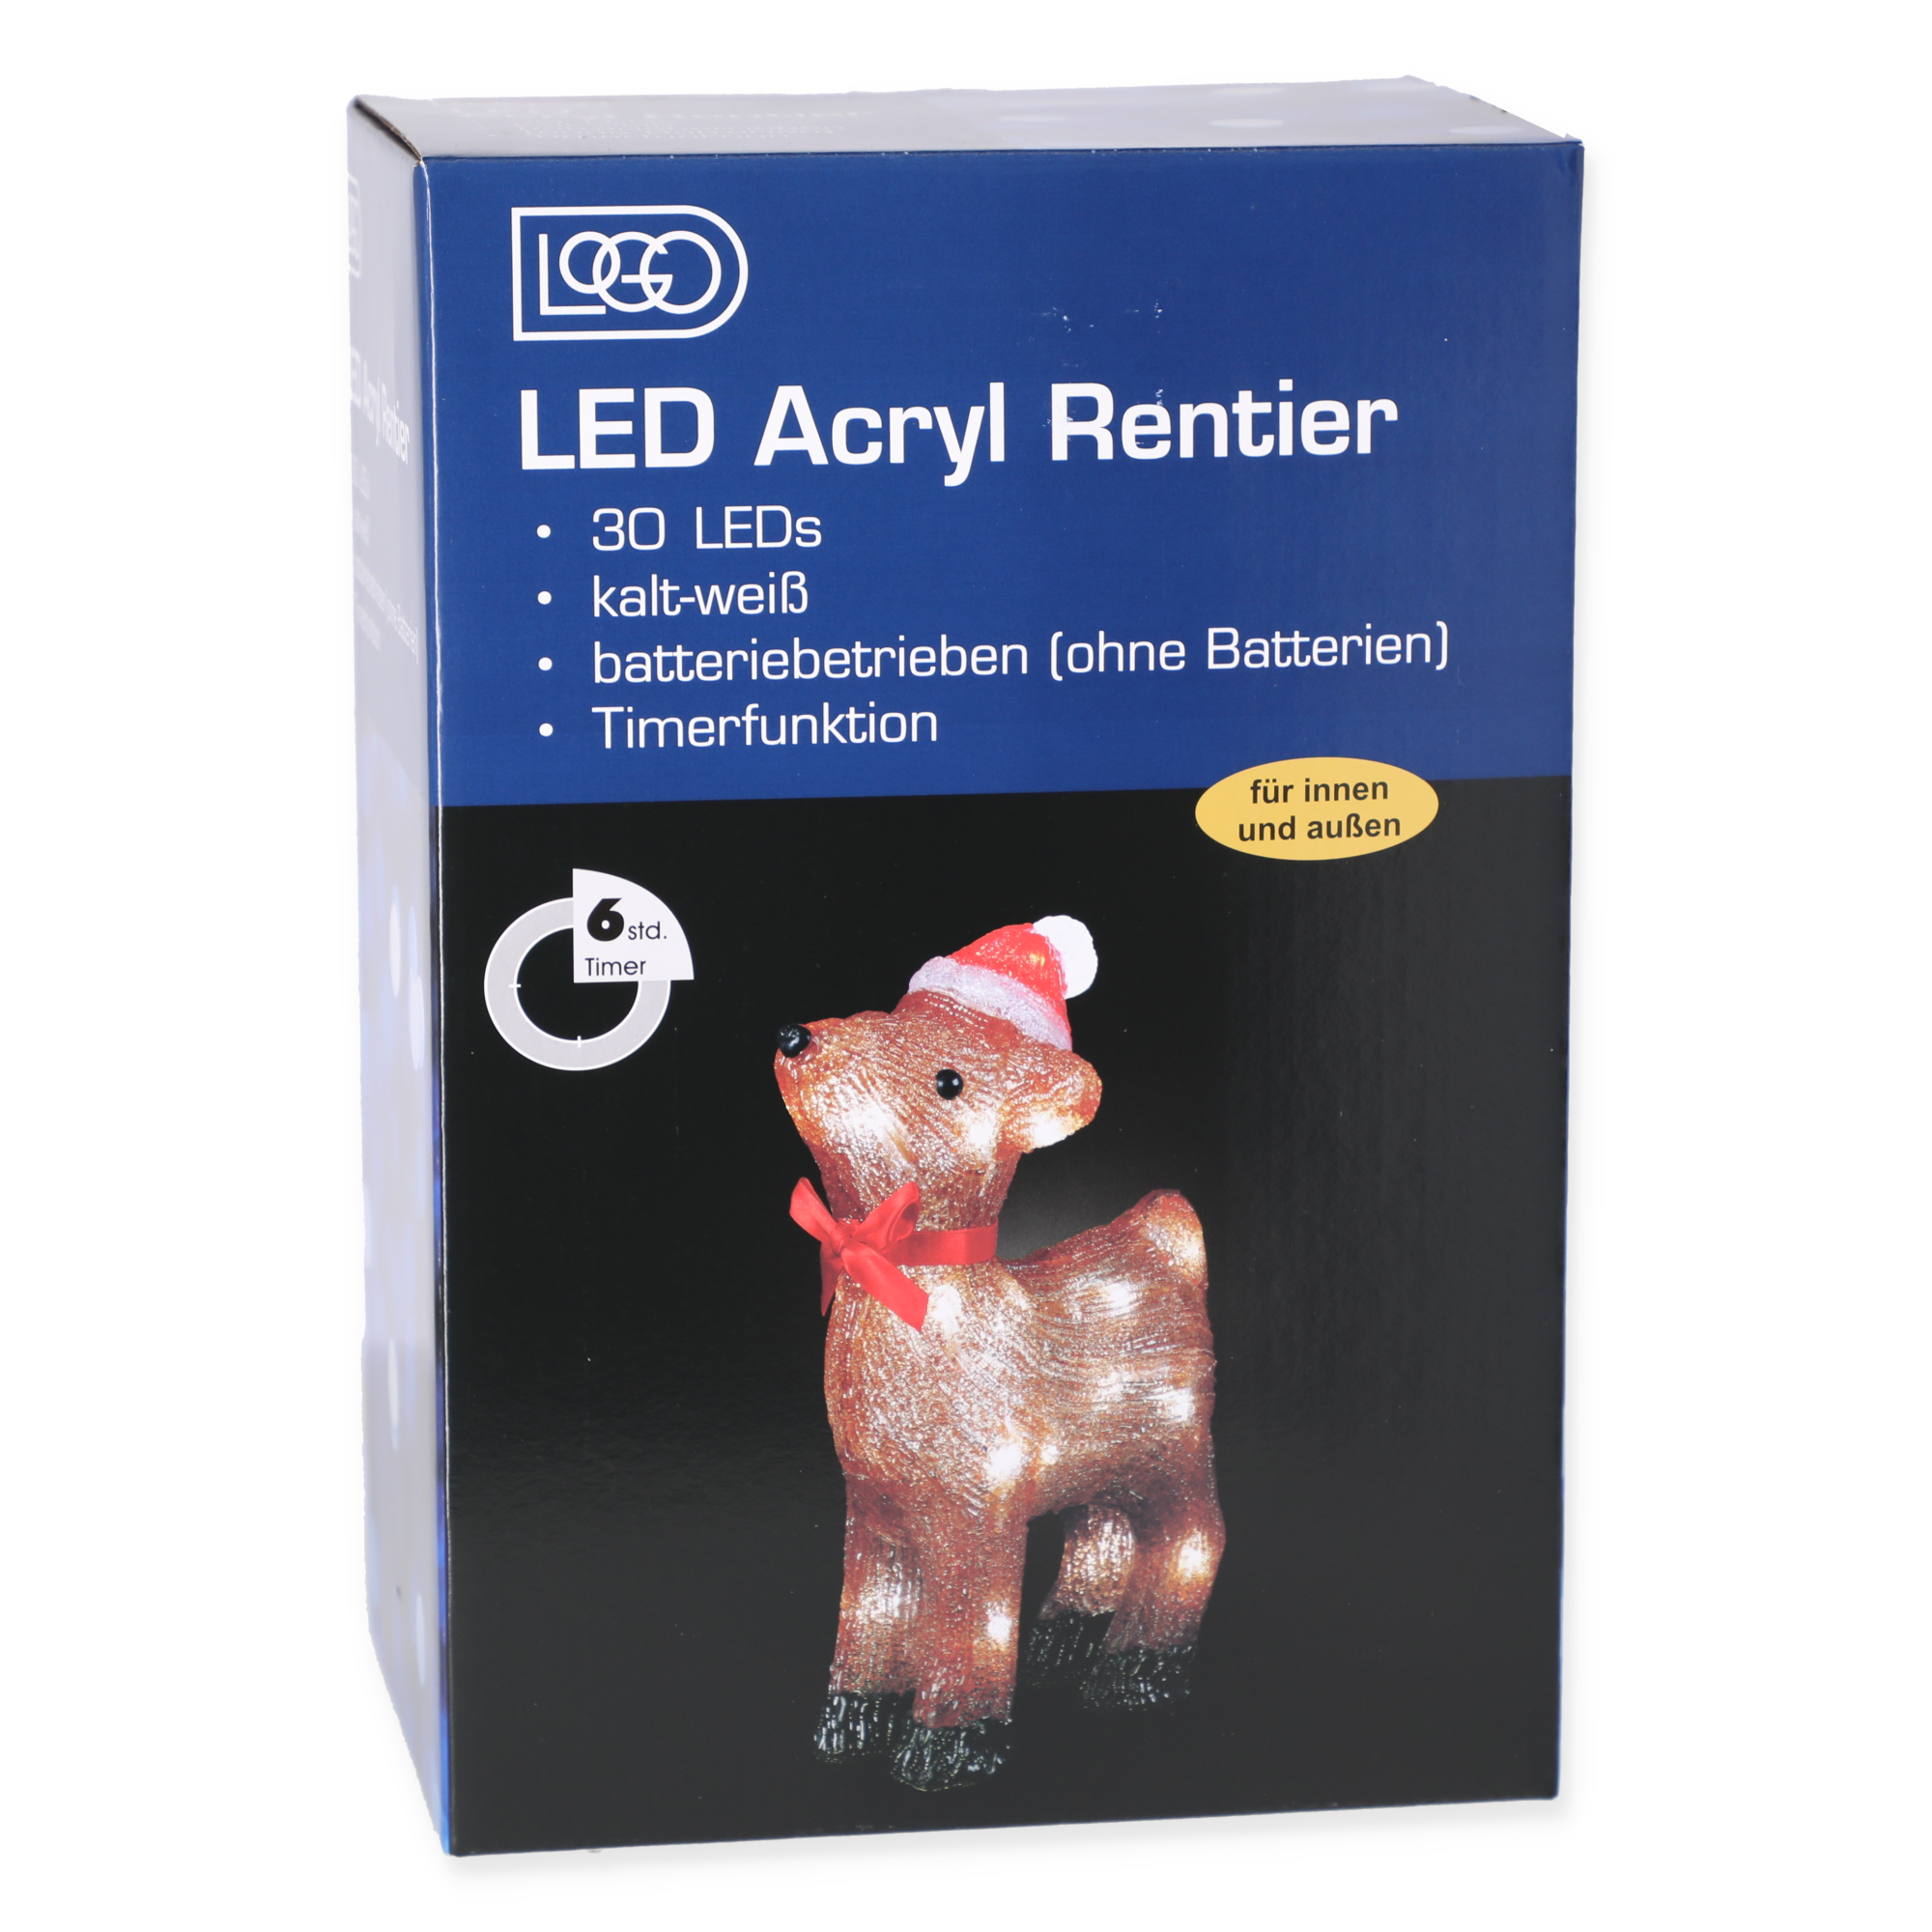 LED-Dekofigur Rentier 30 LEDs kaltweiß 31,5 cm + product picture